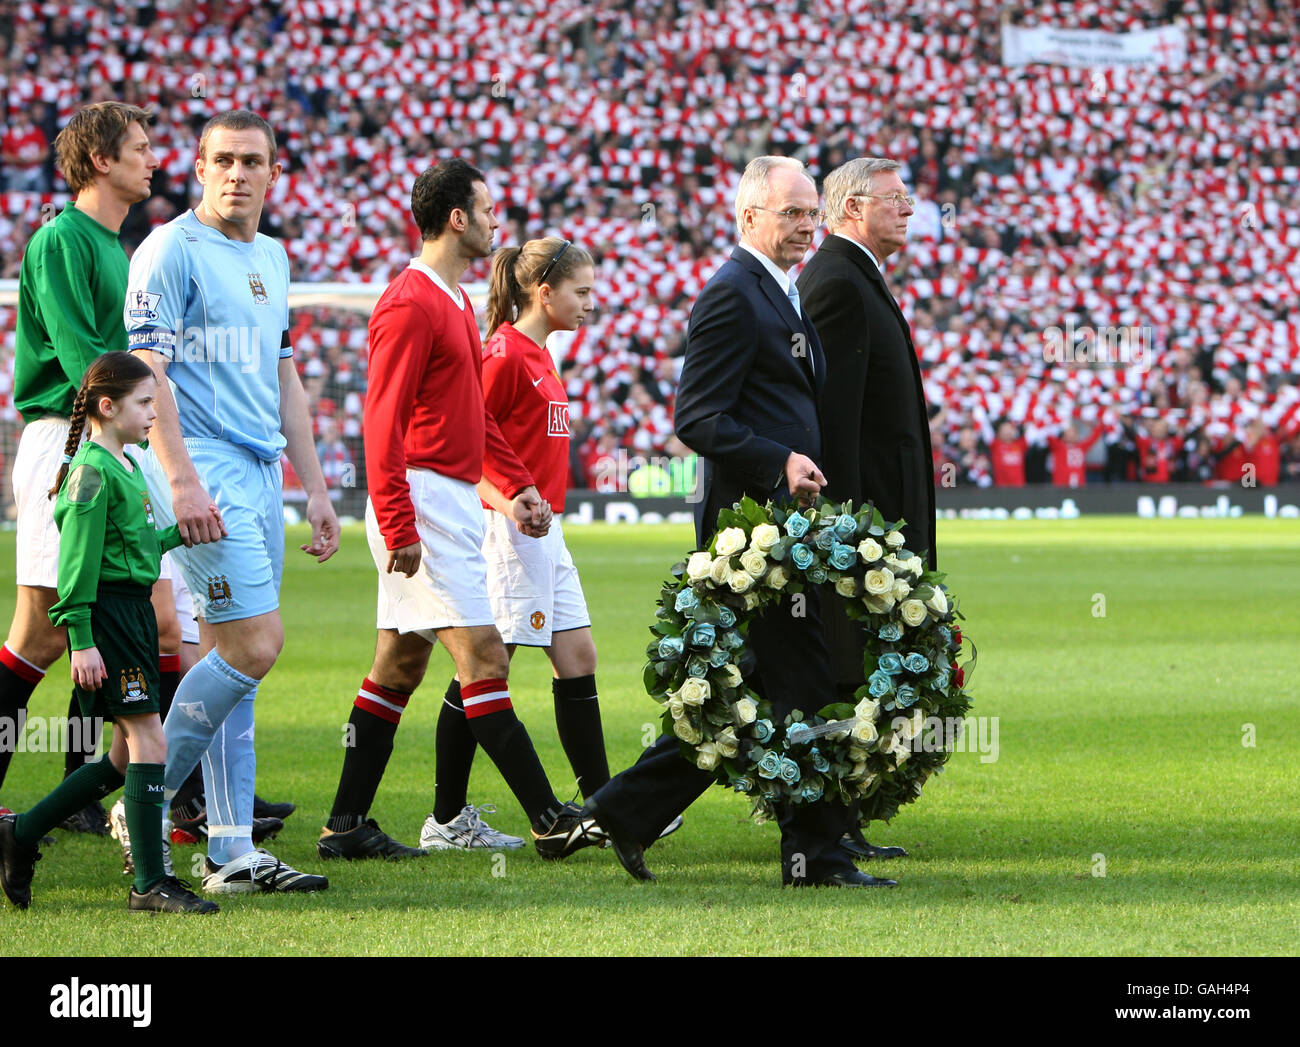 Sir Alex Ferguson, directeur de Manchester United, et Sven Goran Eriksson, directeur de Manchester City, portant une couronne lors du match de la Barclays Premier League à Old Trafford, Manchester. Banque D'Images